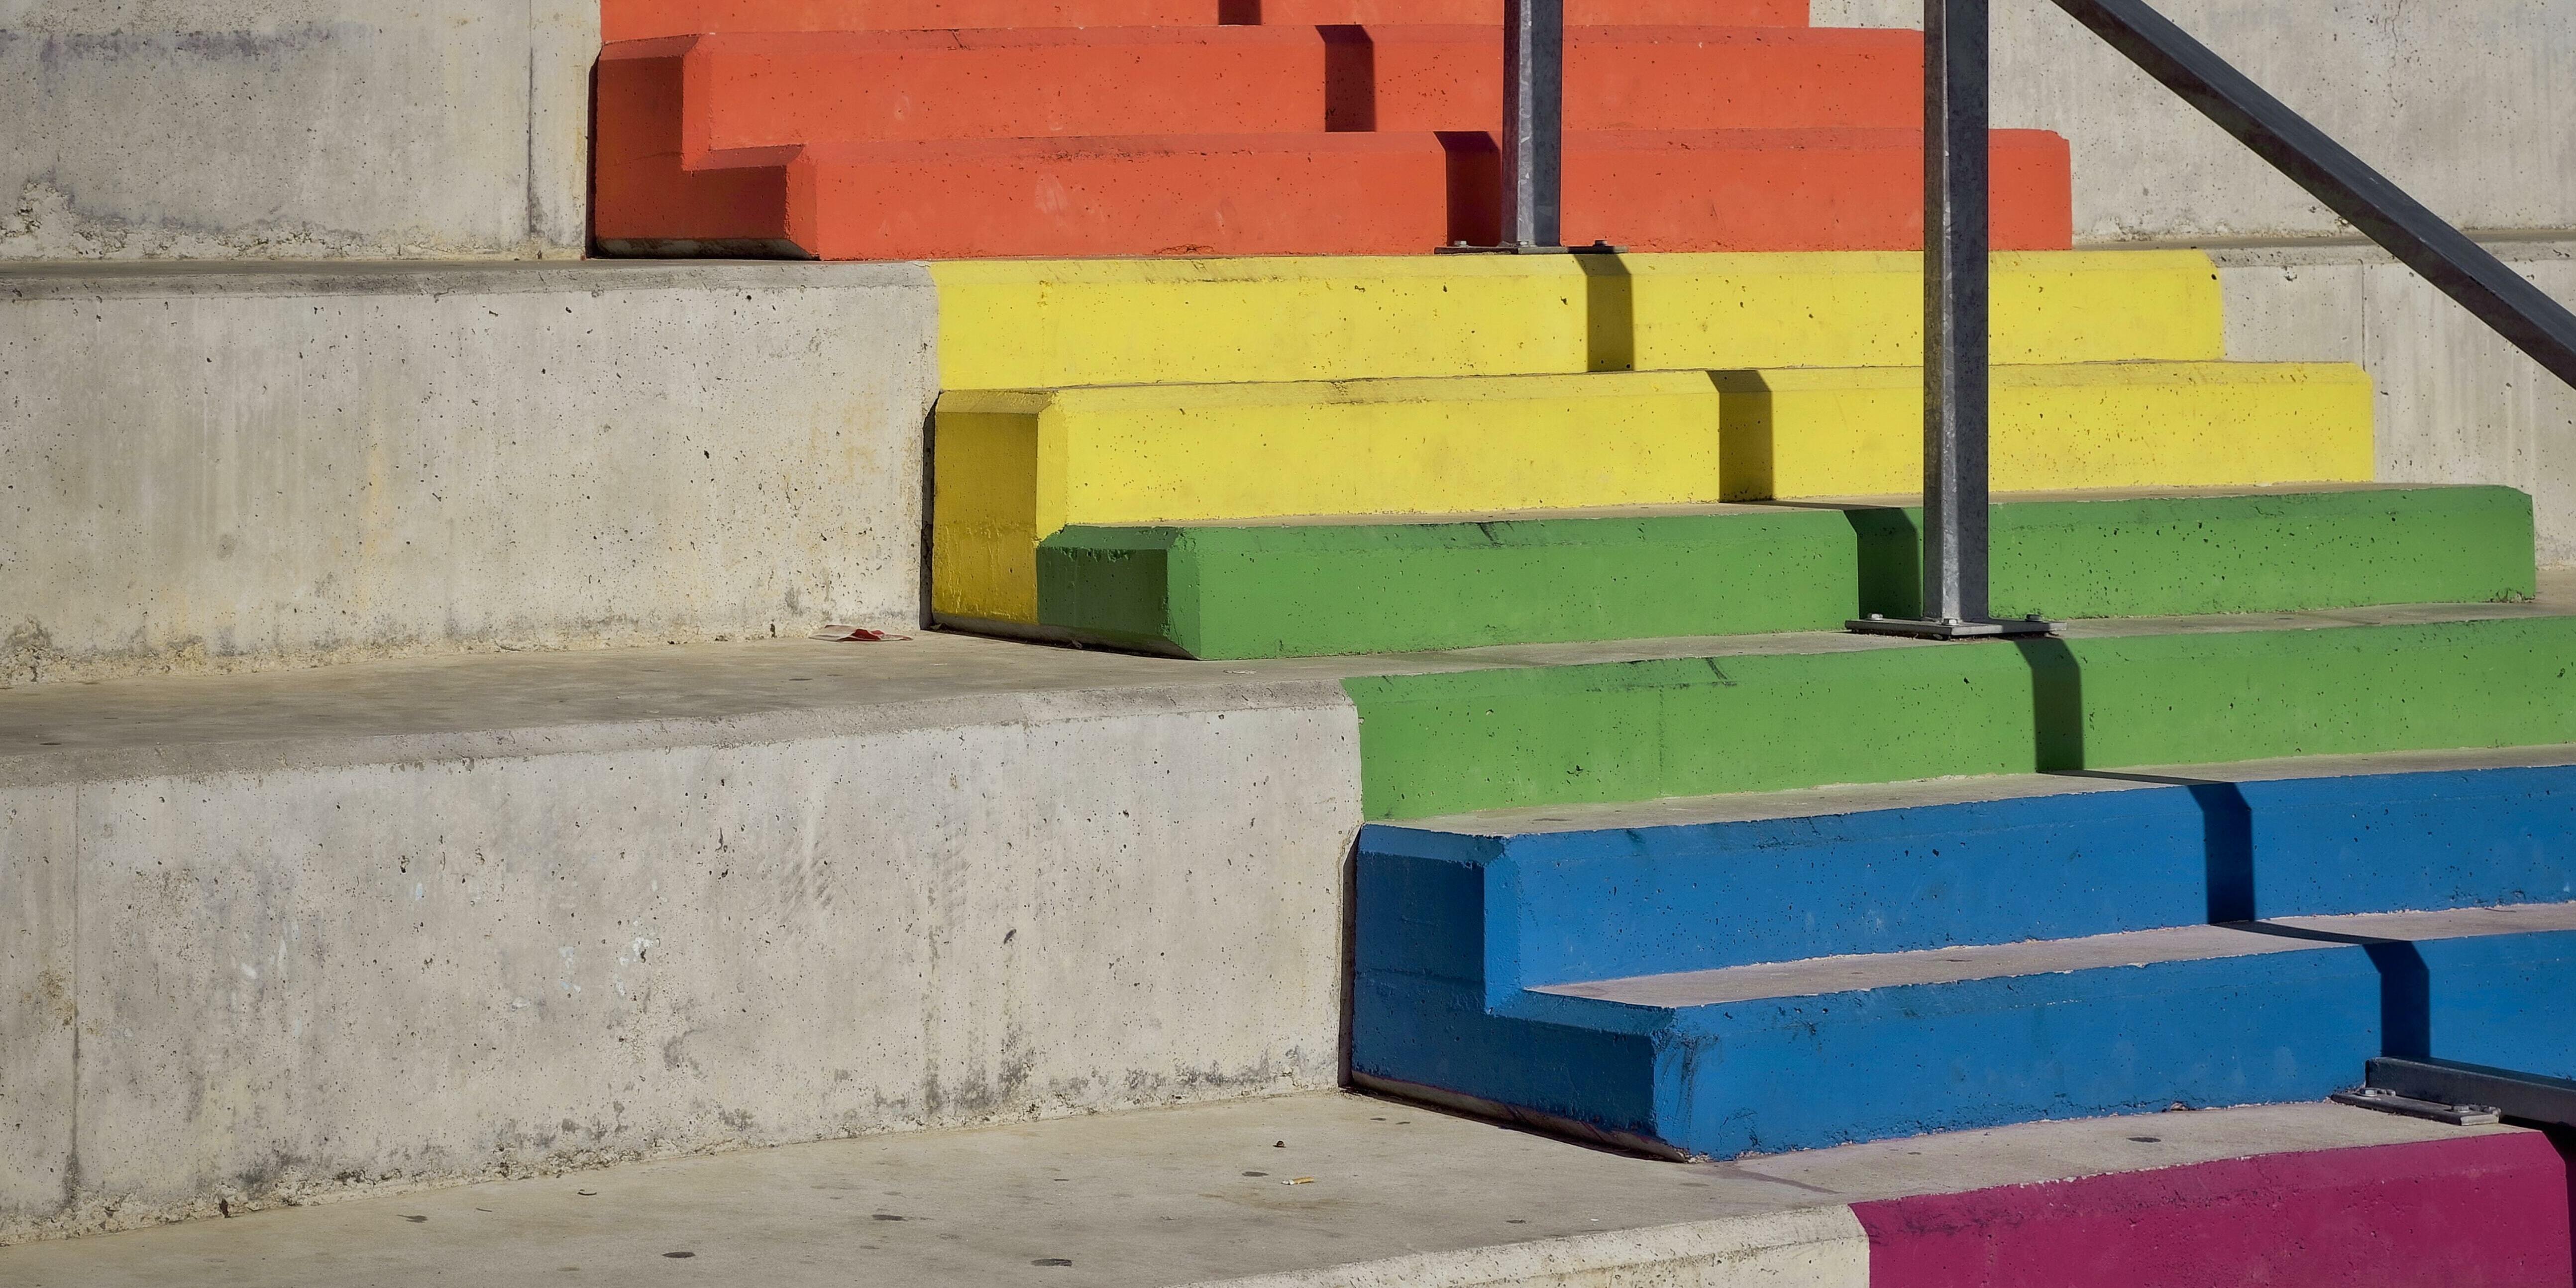 Imatge escales pintades de color LGTBI